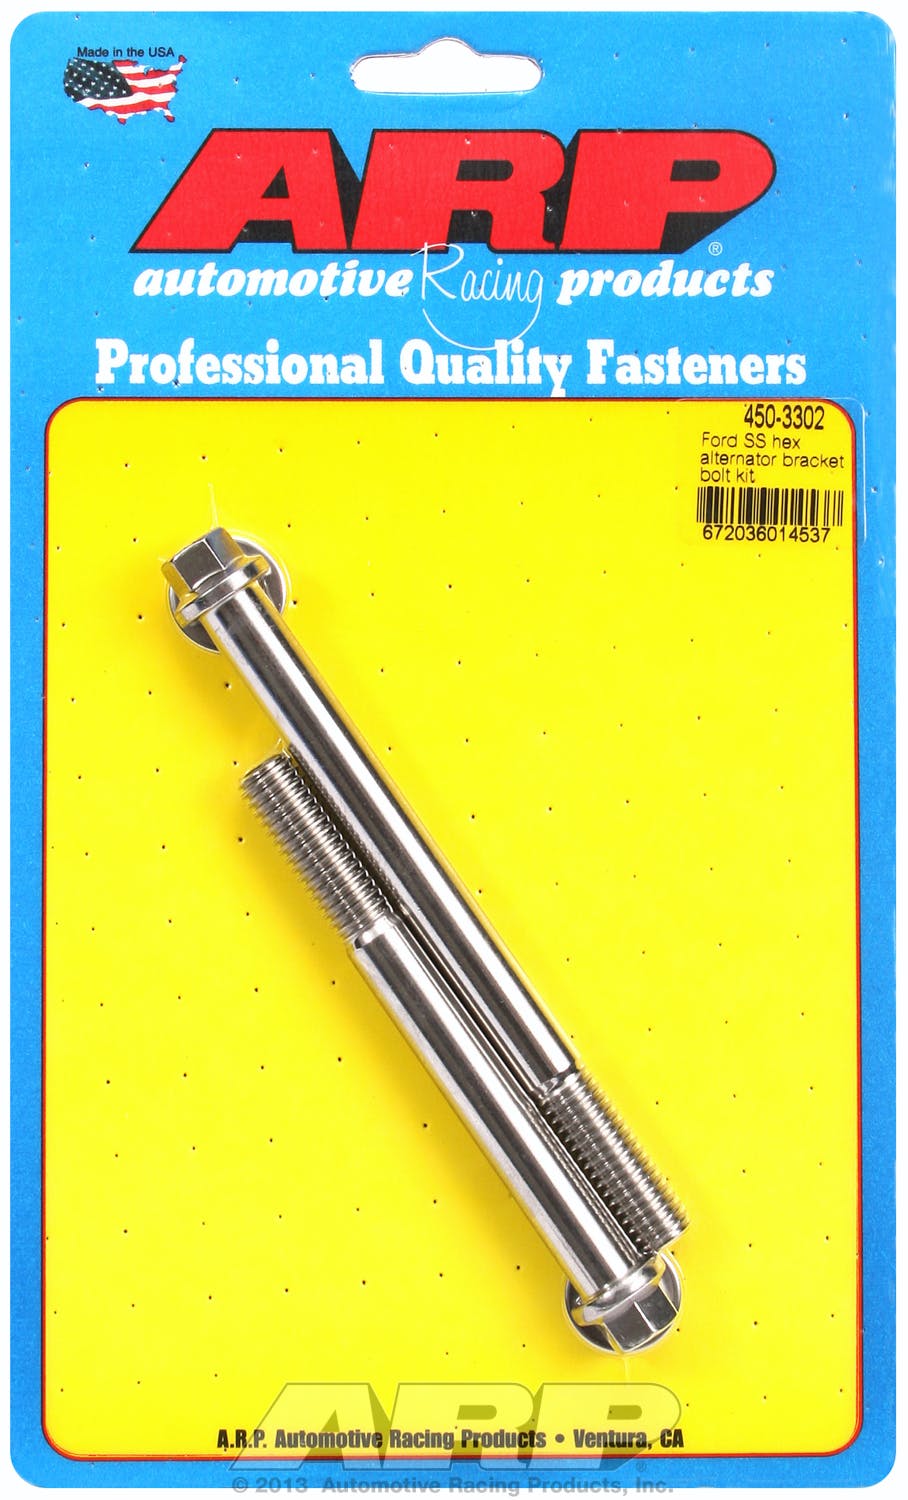 ARP 450-3302 Stainless Steel hex alternator bracket bolt kit